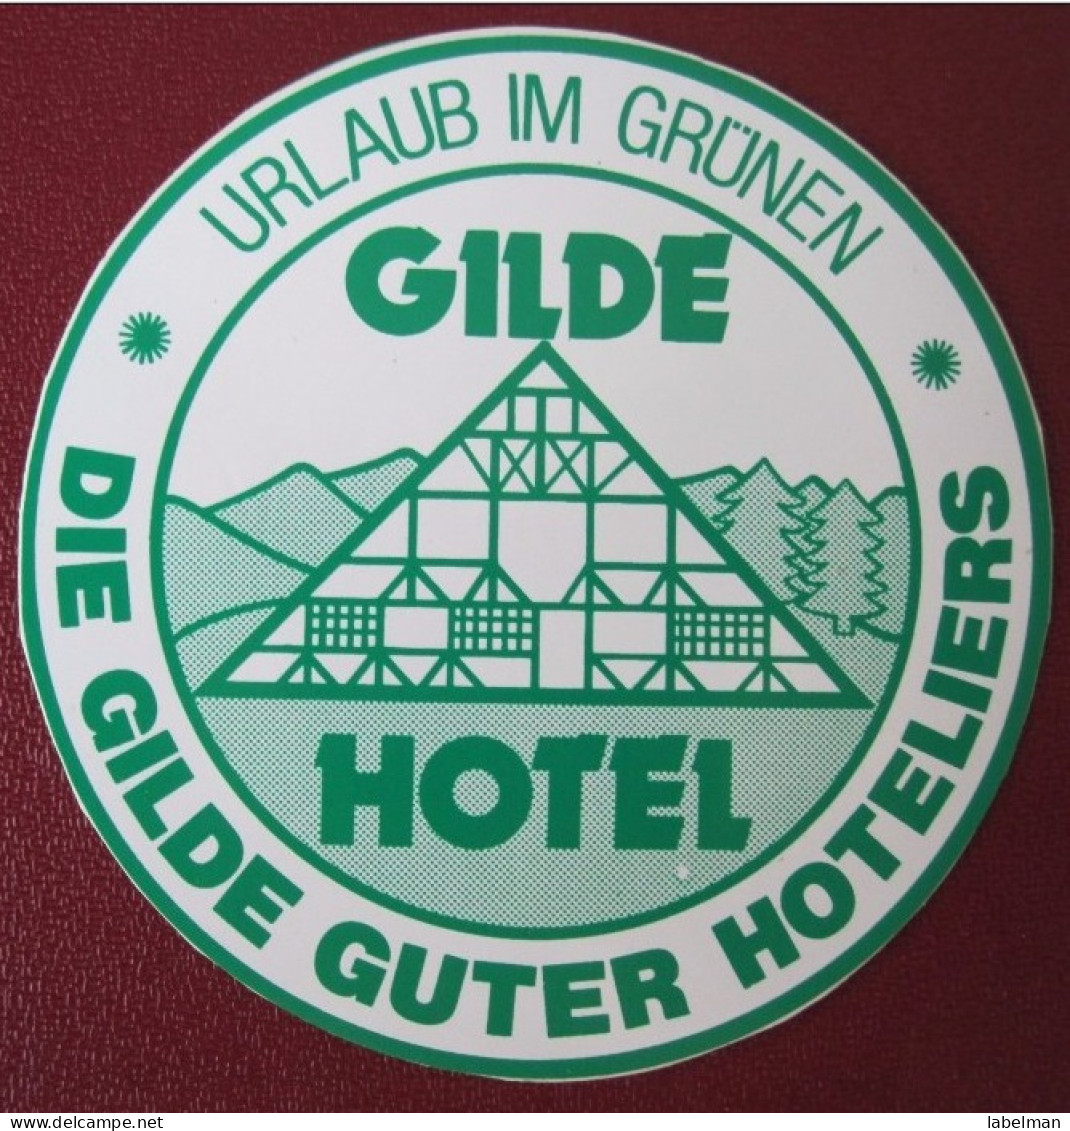 HOTEL MISC GILDE GASTHOF KUR BAD DEUTSCHLAND GERMANY DECAL STICKER LUGGAGE LABEL ETIQUETTE KOFFERAUFKLEBER - Hotel Labels